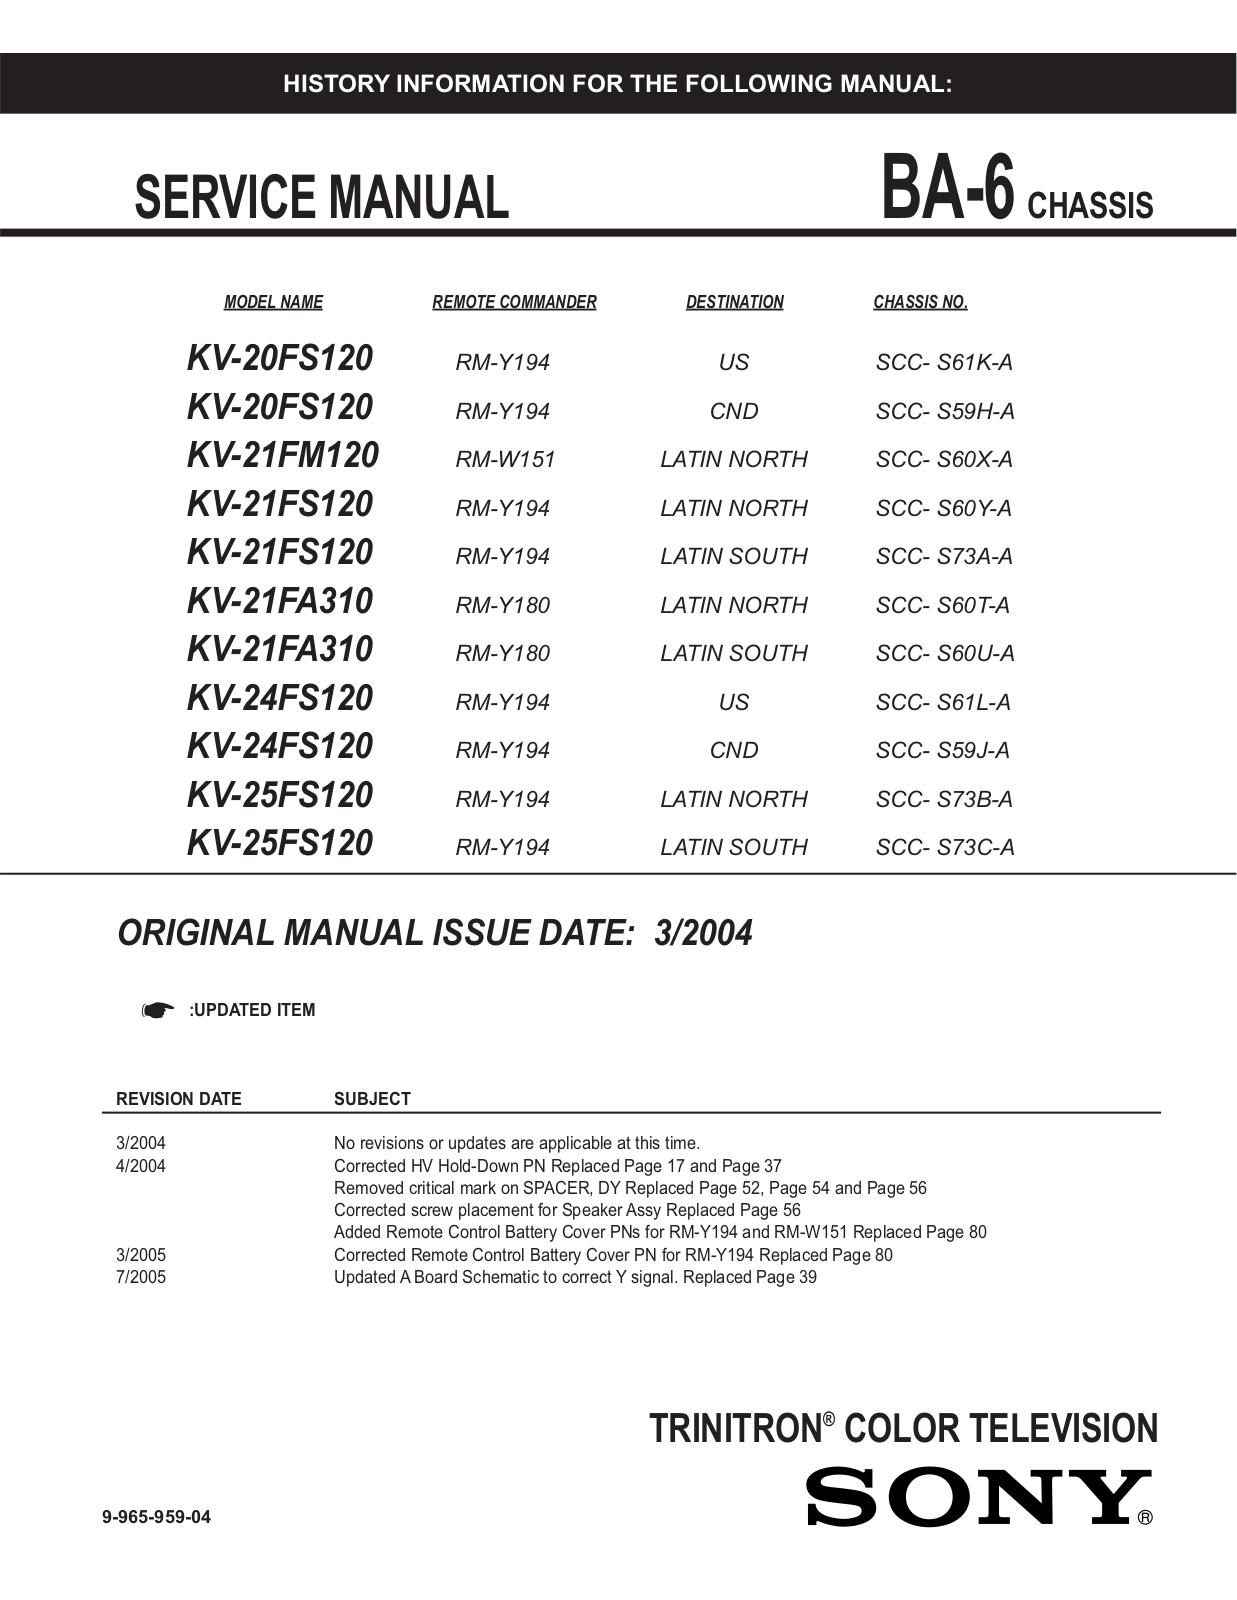 SONY KV-20FS120, KV-21FM120, KV-21FS120, KV-21FA310, KV-24FS120 Service Manual